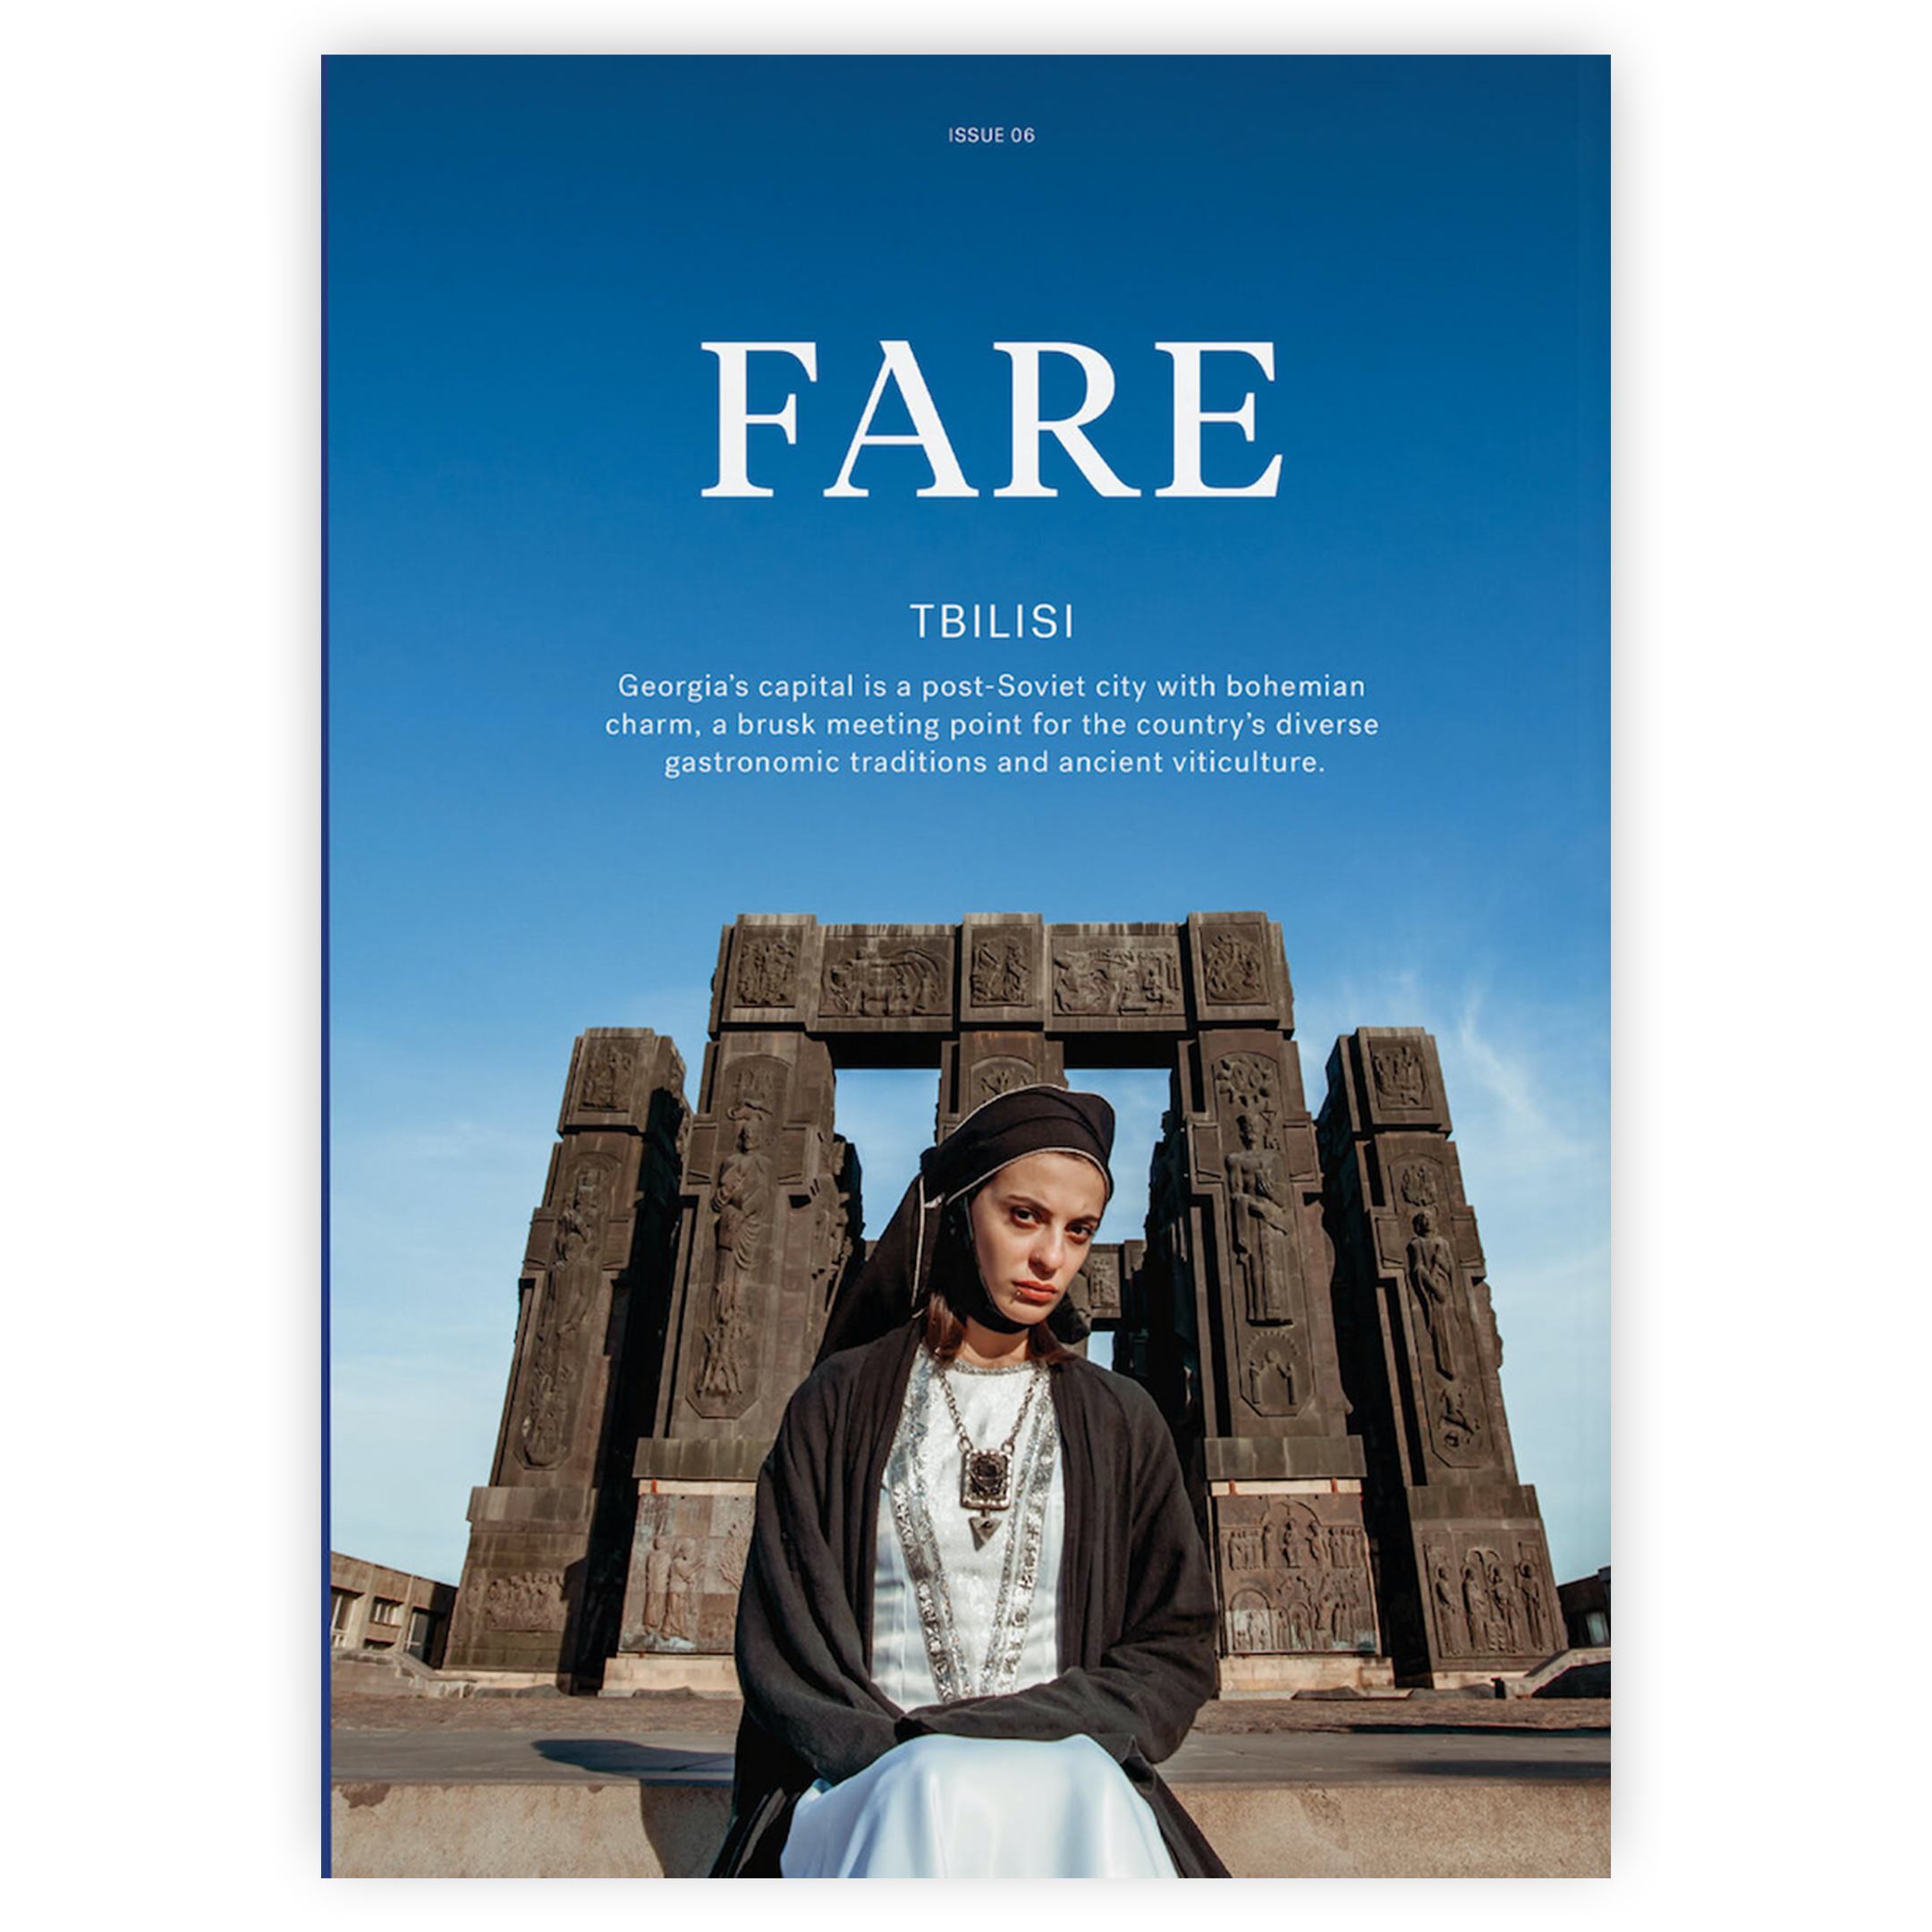 Fare Magazine / Nummer 06 / Tbilisi